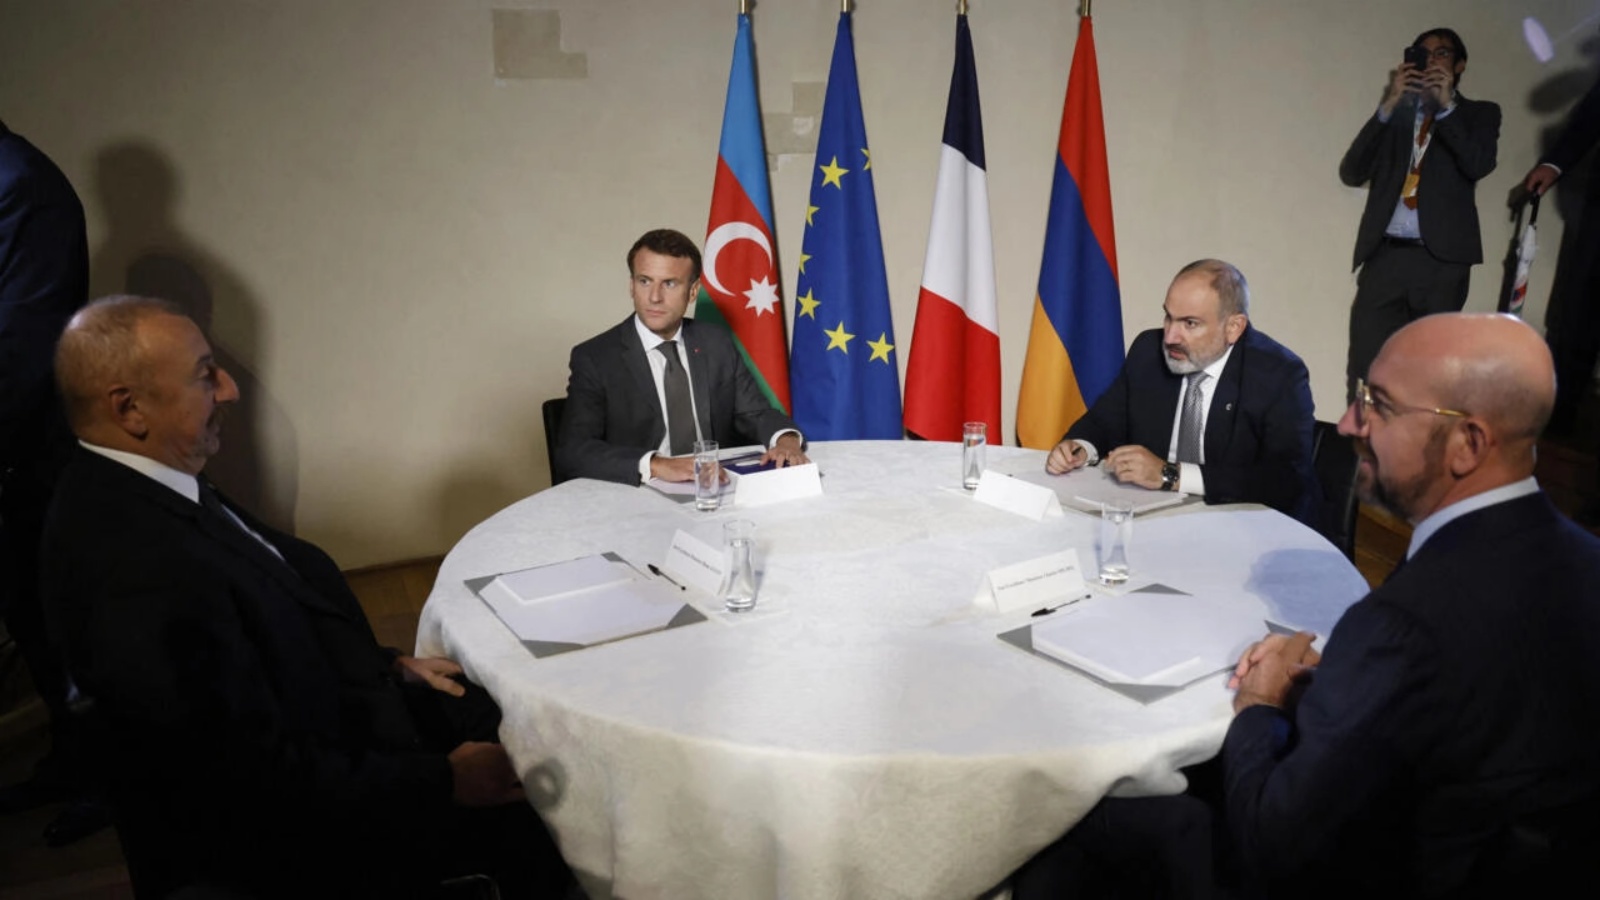 رئيس أذربيجان إلهام علييف (يسار) والرئيس الفرنسي إيمانويل ماكرون (2 يسار) ورئيس وزراء أرمينيا نيكول باشينيان (2 يمين) ورئيس المجلس الأوروبي تشارلز ميشيل (يمين) يجتمعون في براغ، جمهورية التشيك، في 6 أكتوبر 2022